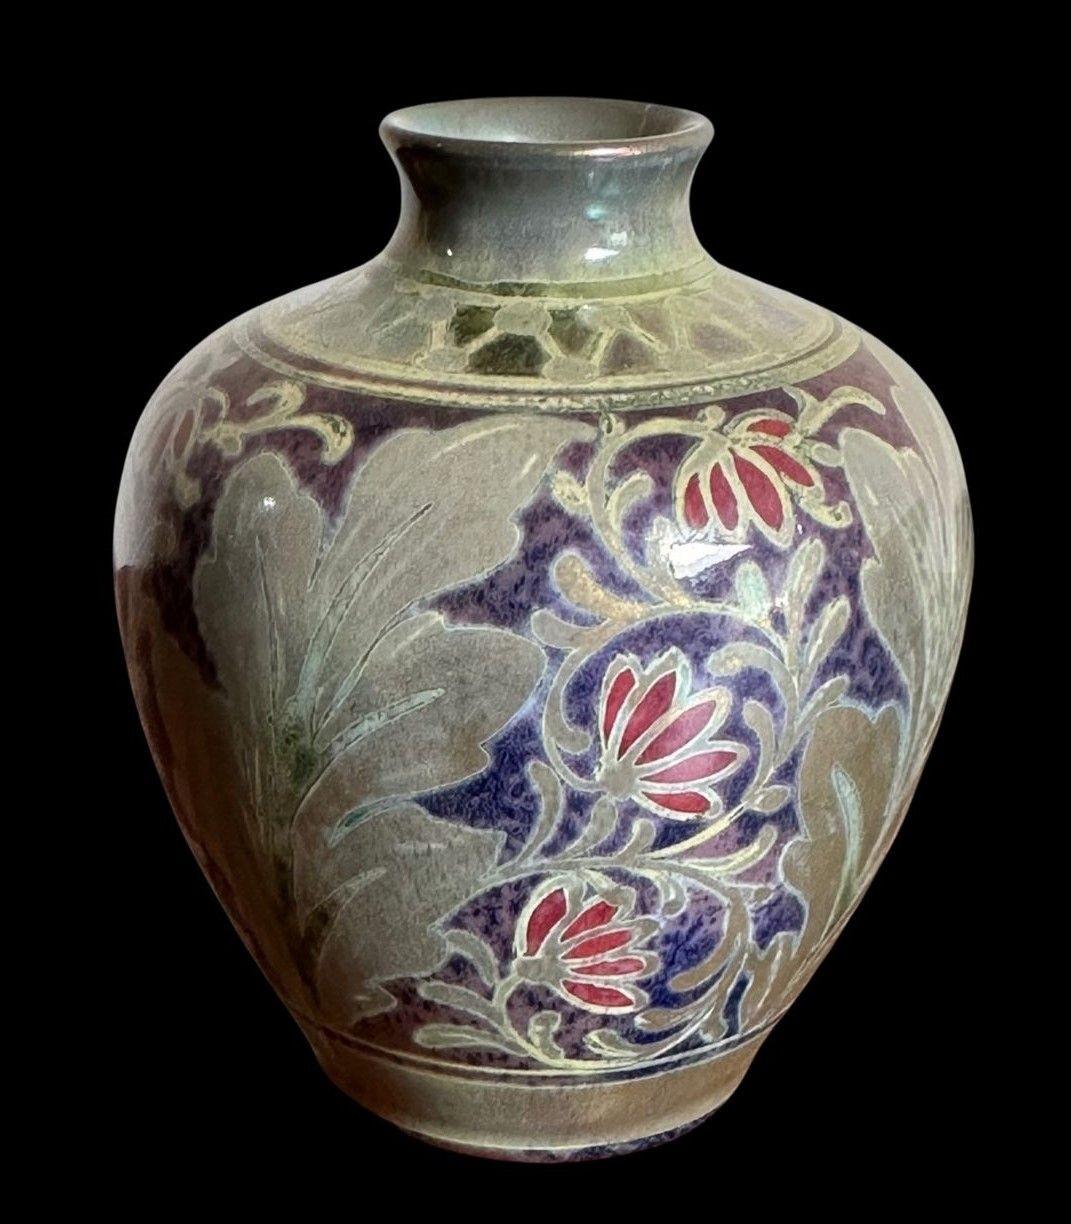 173
Pilkington's Royal Lancastrian Lustre Vase, verziert mit stilisierten Blättern und Blumen von William Slater Mycock
Datiert 1922
Maße: 10,5 m hoch, 8 cm breit
Ex ADS Antiquitäten Verkaufsausstellung 2020.